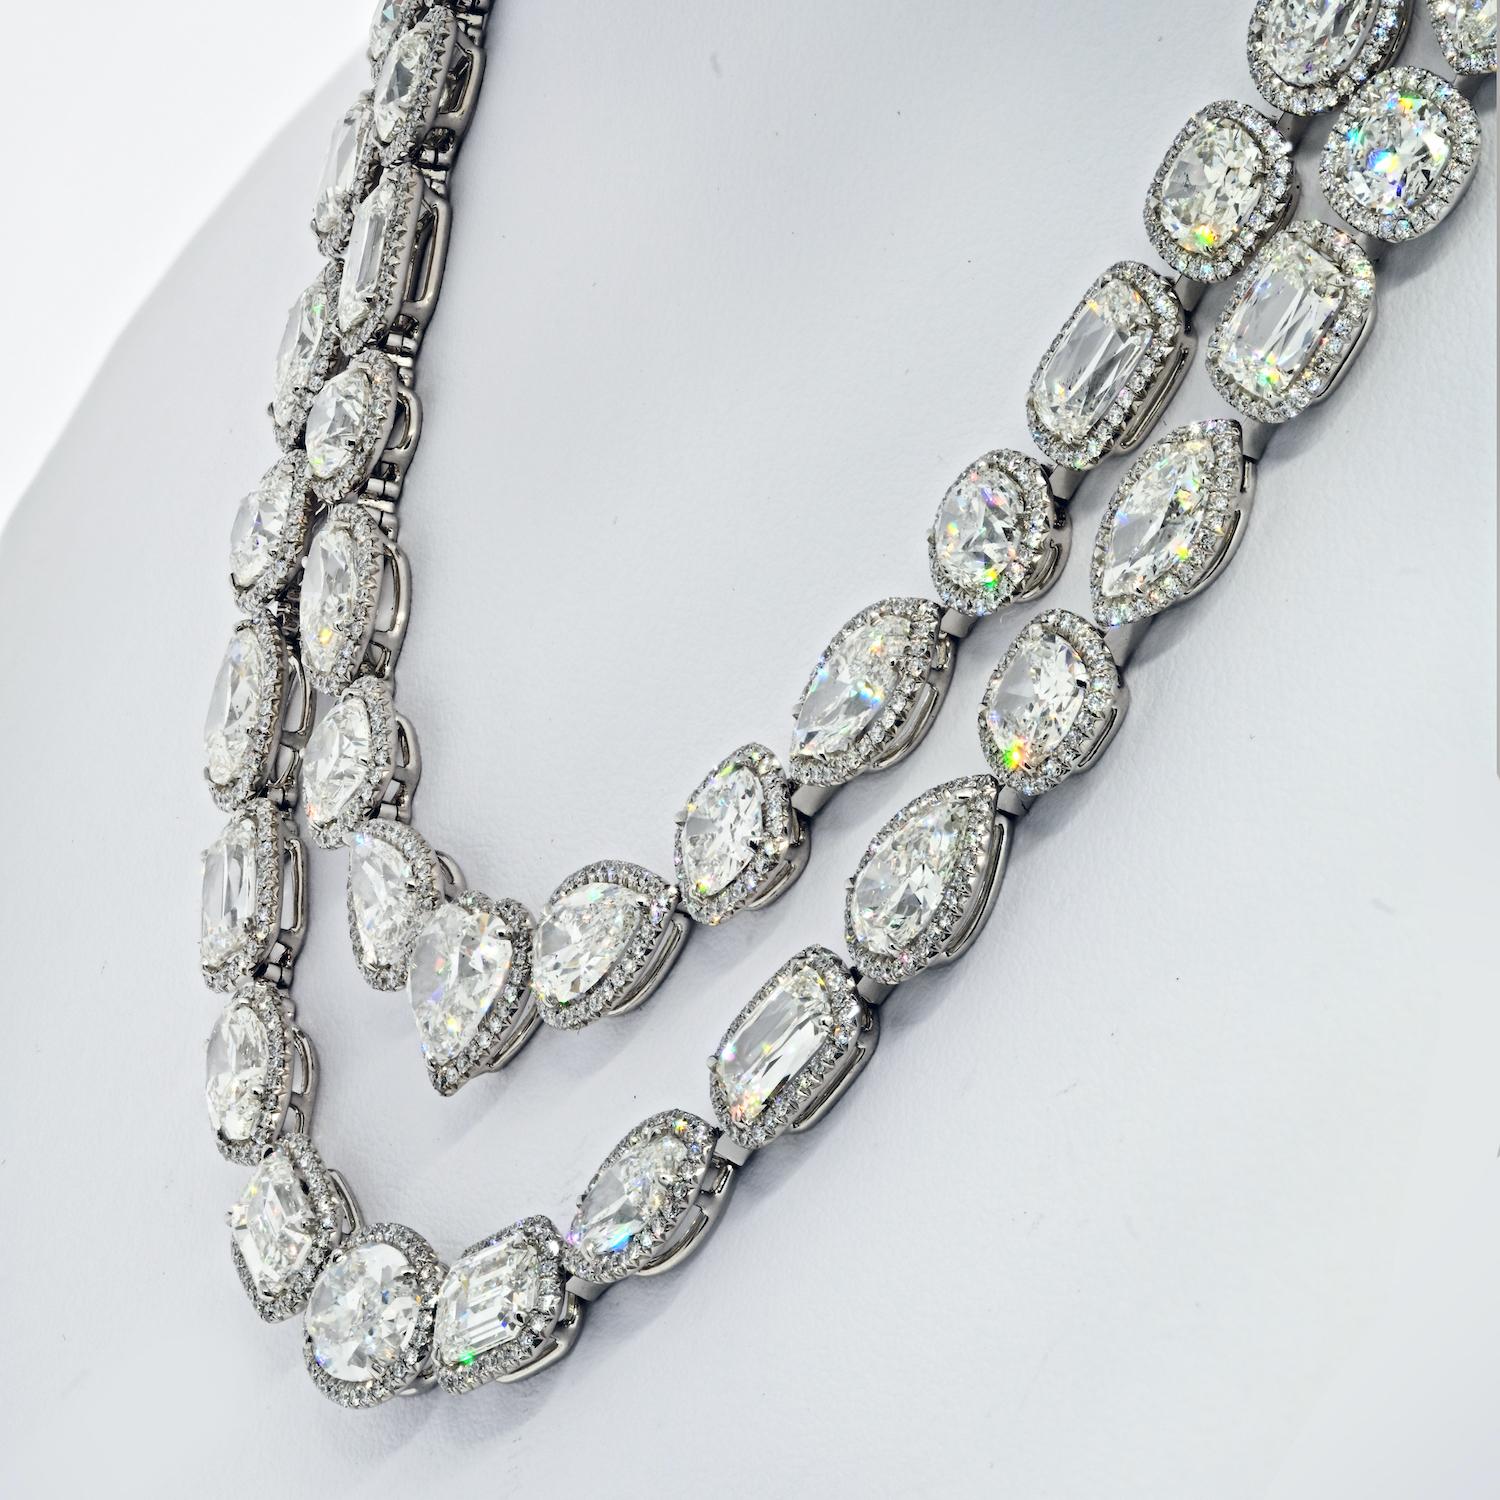 Ce collier de diamants de William Goldberg est un bel exemple de la façon dont les formes fantaisistes peuvent réellement créer un bijou d'importance. Conçue comme une guirlande de deux rangées de diamants Ashoka [nom de marque d'une taille ronde,